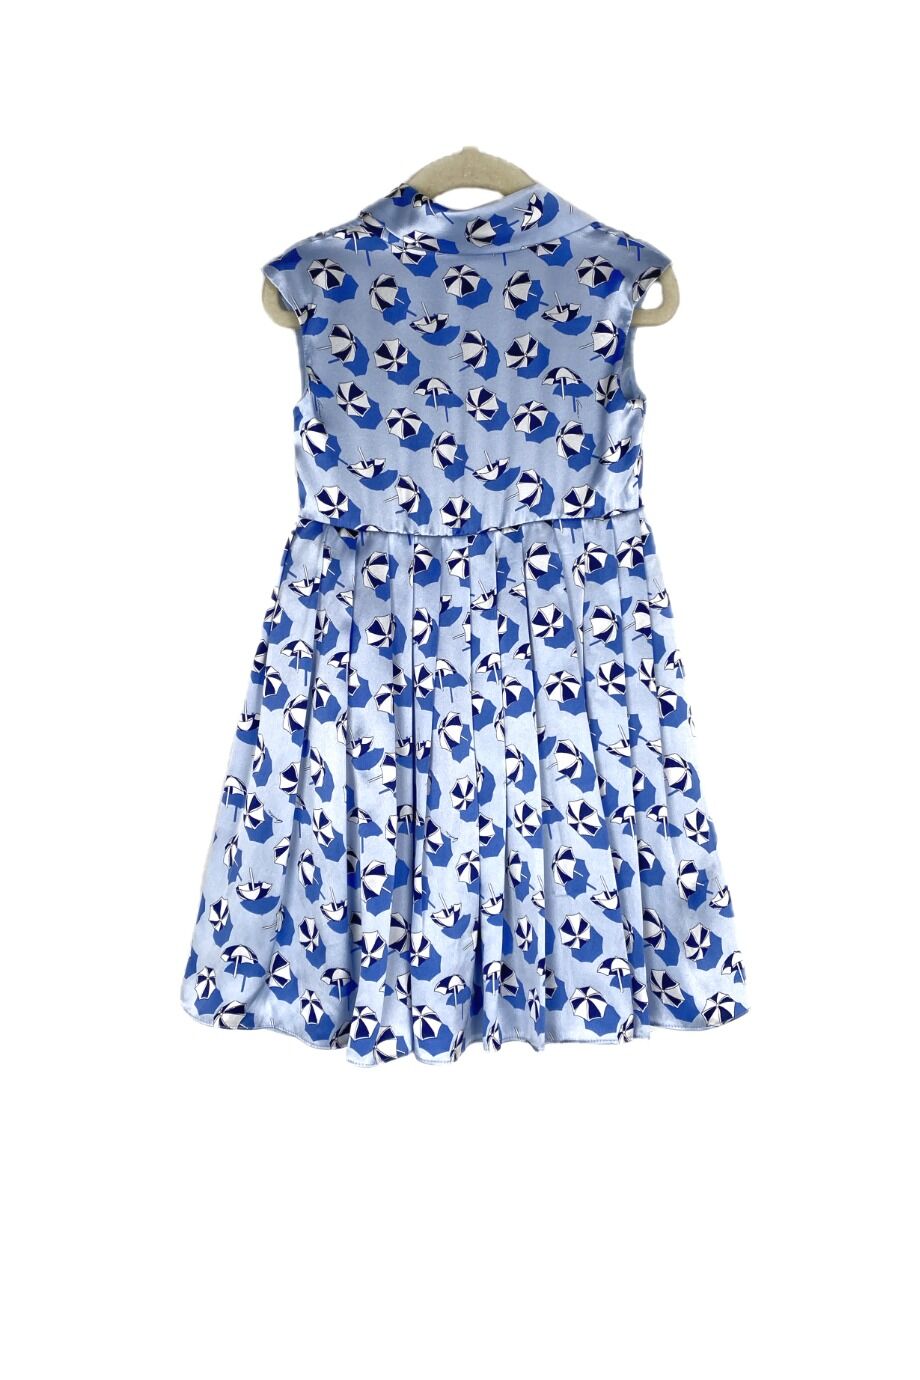 image 2 Детское платье голубого цвета без рукавов с принтом